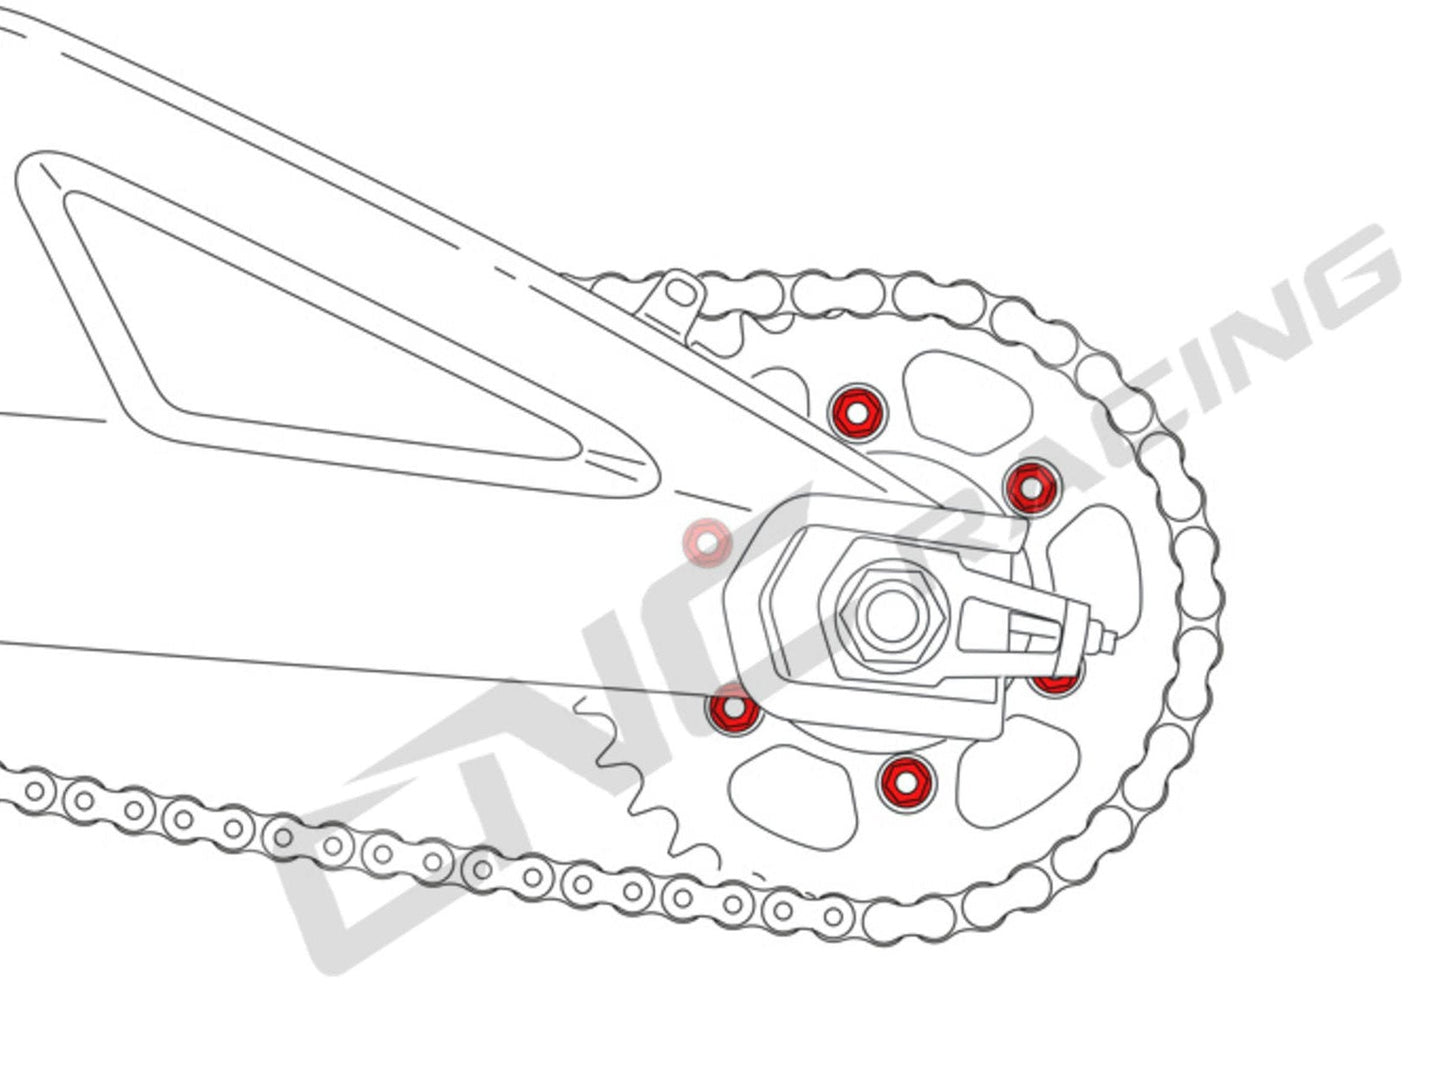 DA387X - CNC RACING Ducati / Kawasaki Titanium Gear Ring Nuts set (M10x1.25)